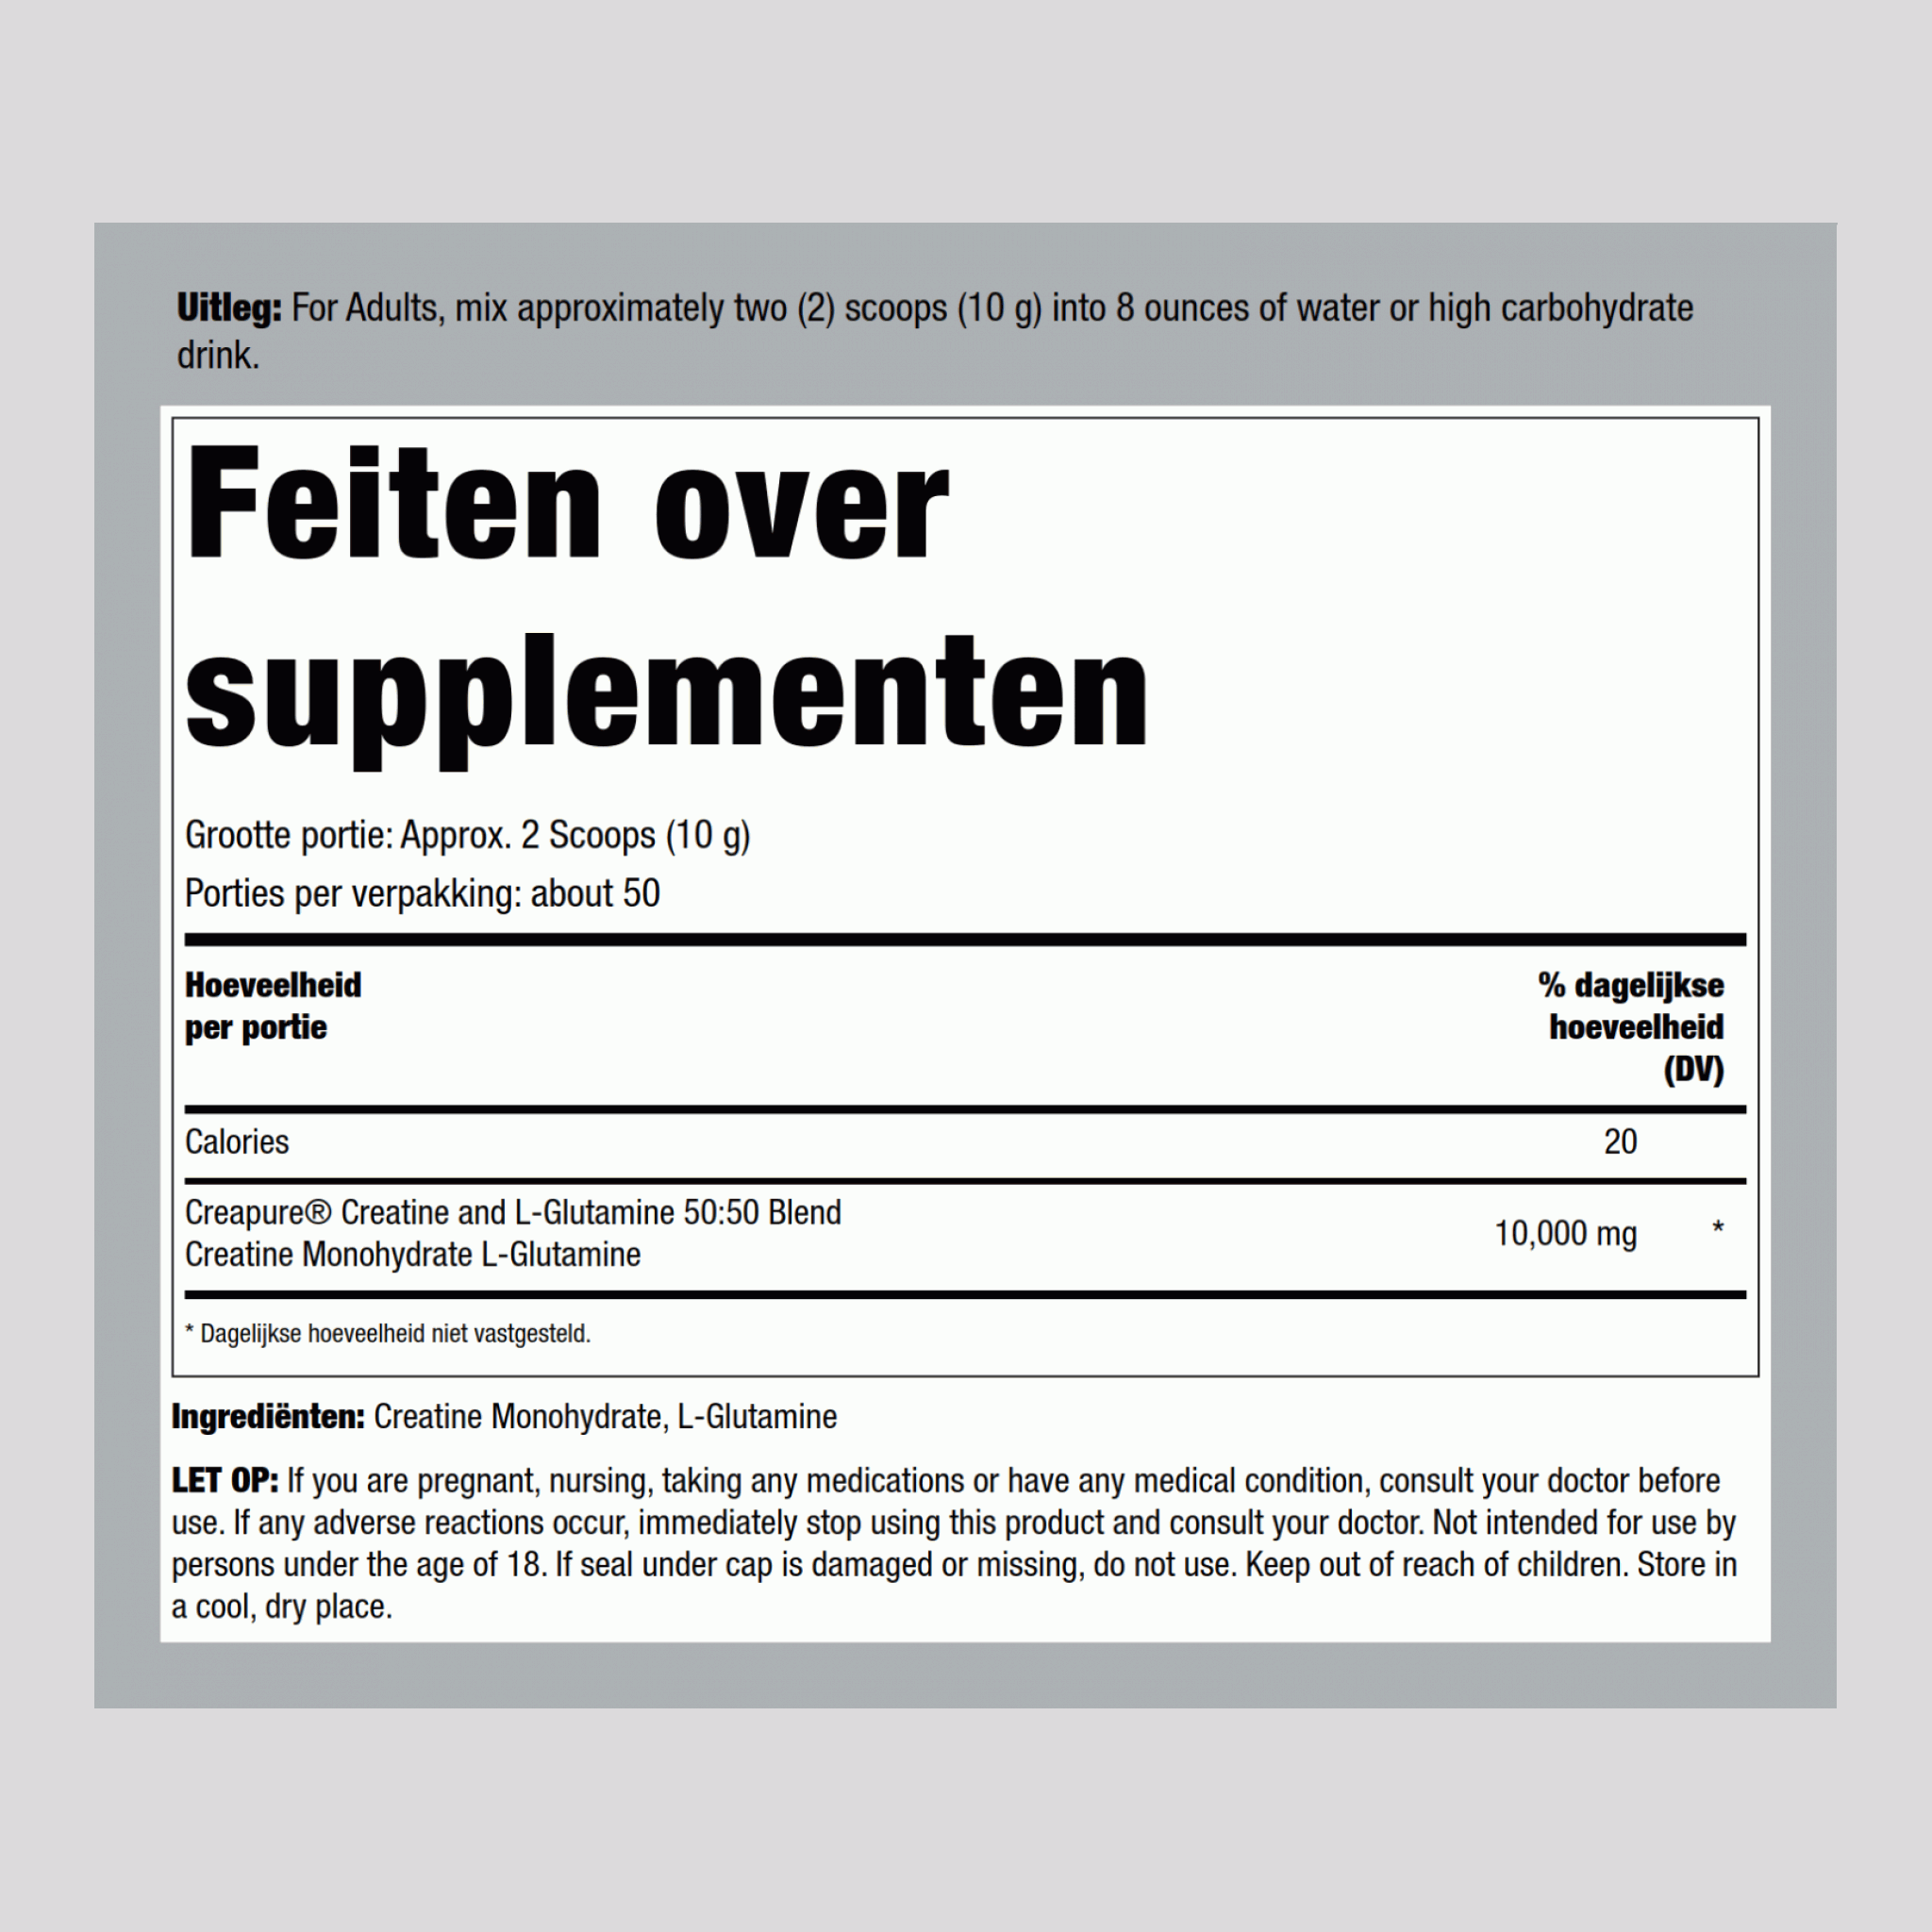 German Creatine (Creapure) & L-Glutaminepoeder (50:50 mix) 10 gram (per portie) 1.1 pond 500 g Fles  